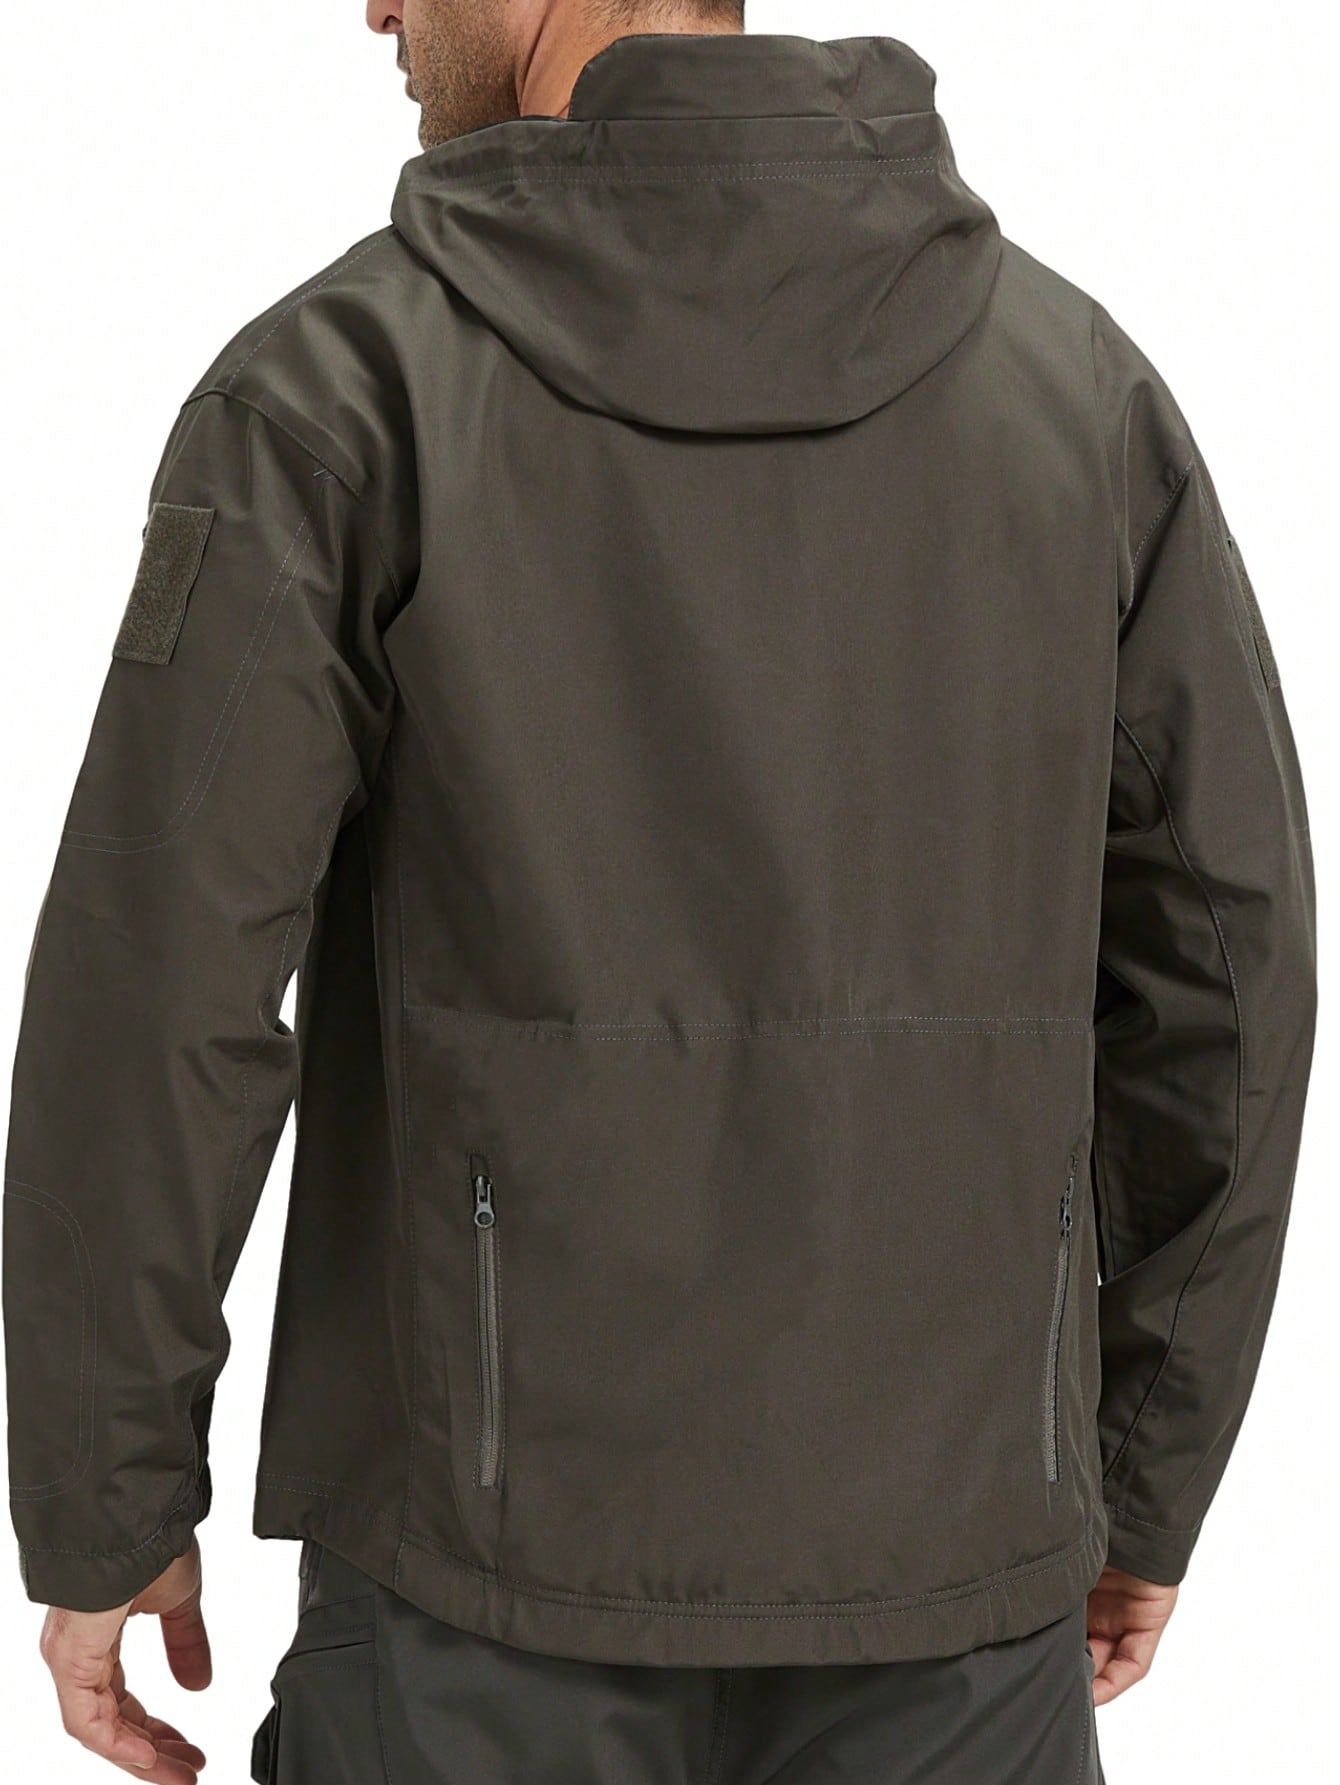 Мужская спортивная куртка с капюшоном, темно-серый мужская весенняя куртка в стиле милитари водонепроницаемая ветровка с акульей шкурой тактическая верхняя одежда пальто для походов кемп